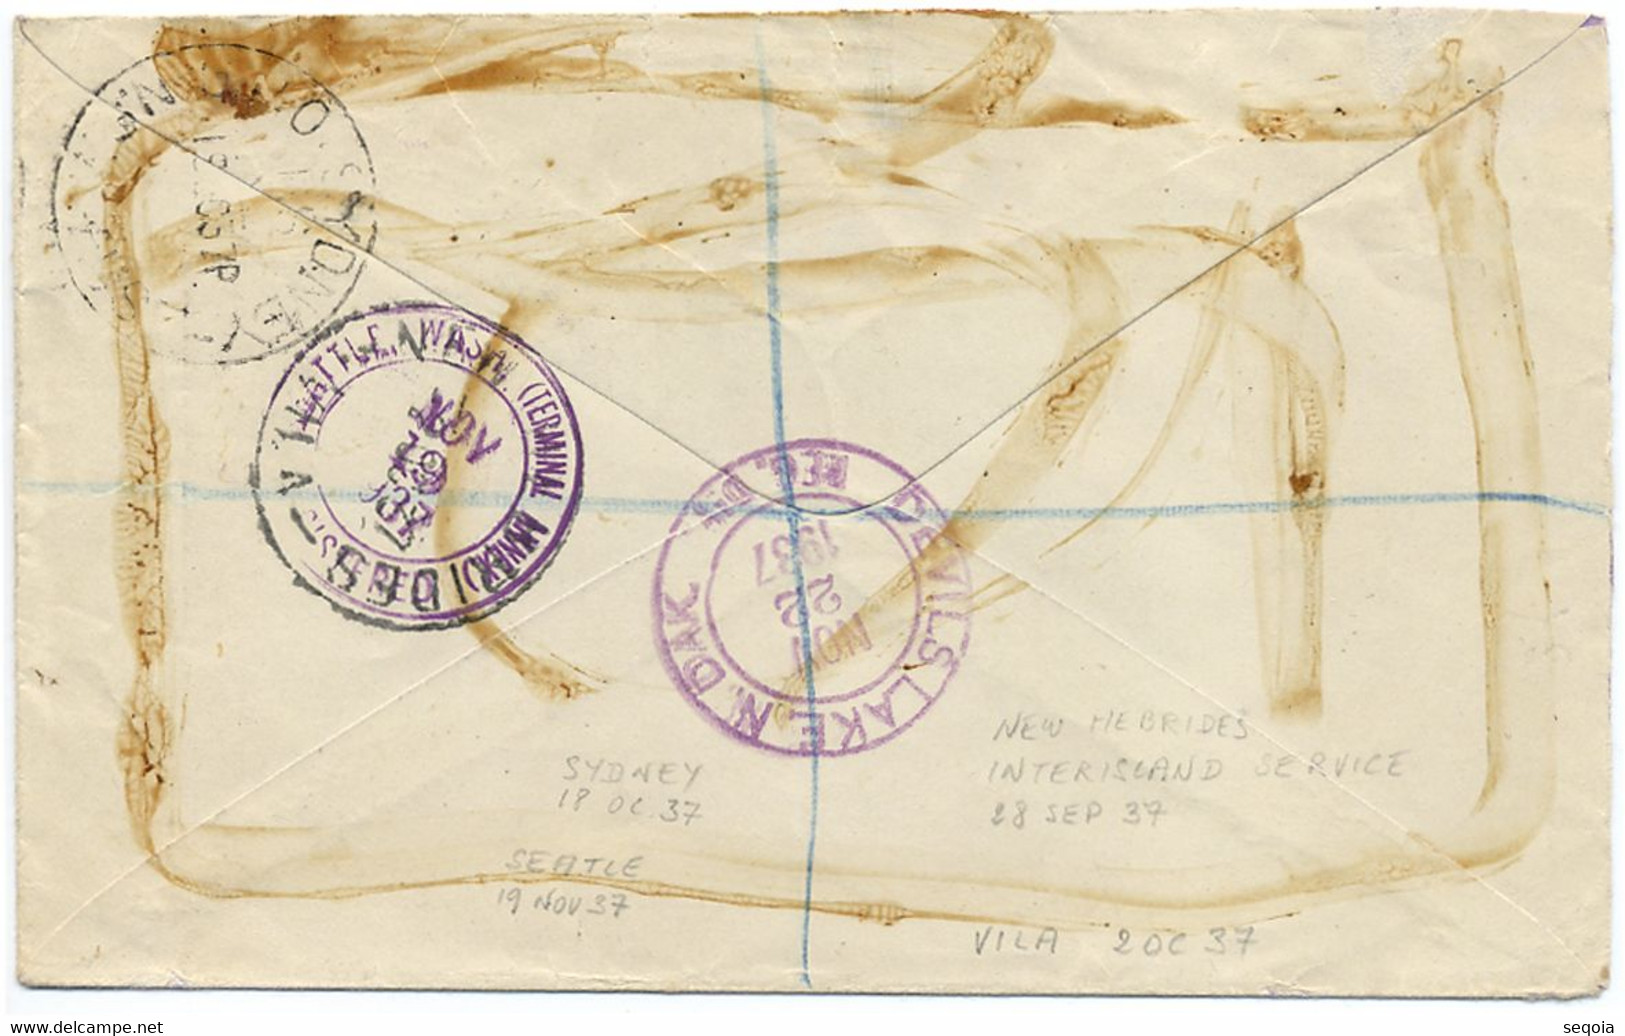 1937 NOUVELLES HEBRIDES LETTRE AVEC CACHET DE RECOMMANDATION SANTO ET OBL INTERISLAND SERVICE POUR LES USA - Storia Postale